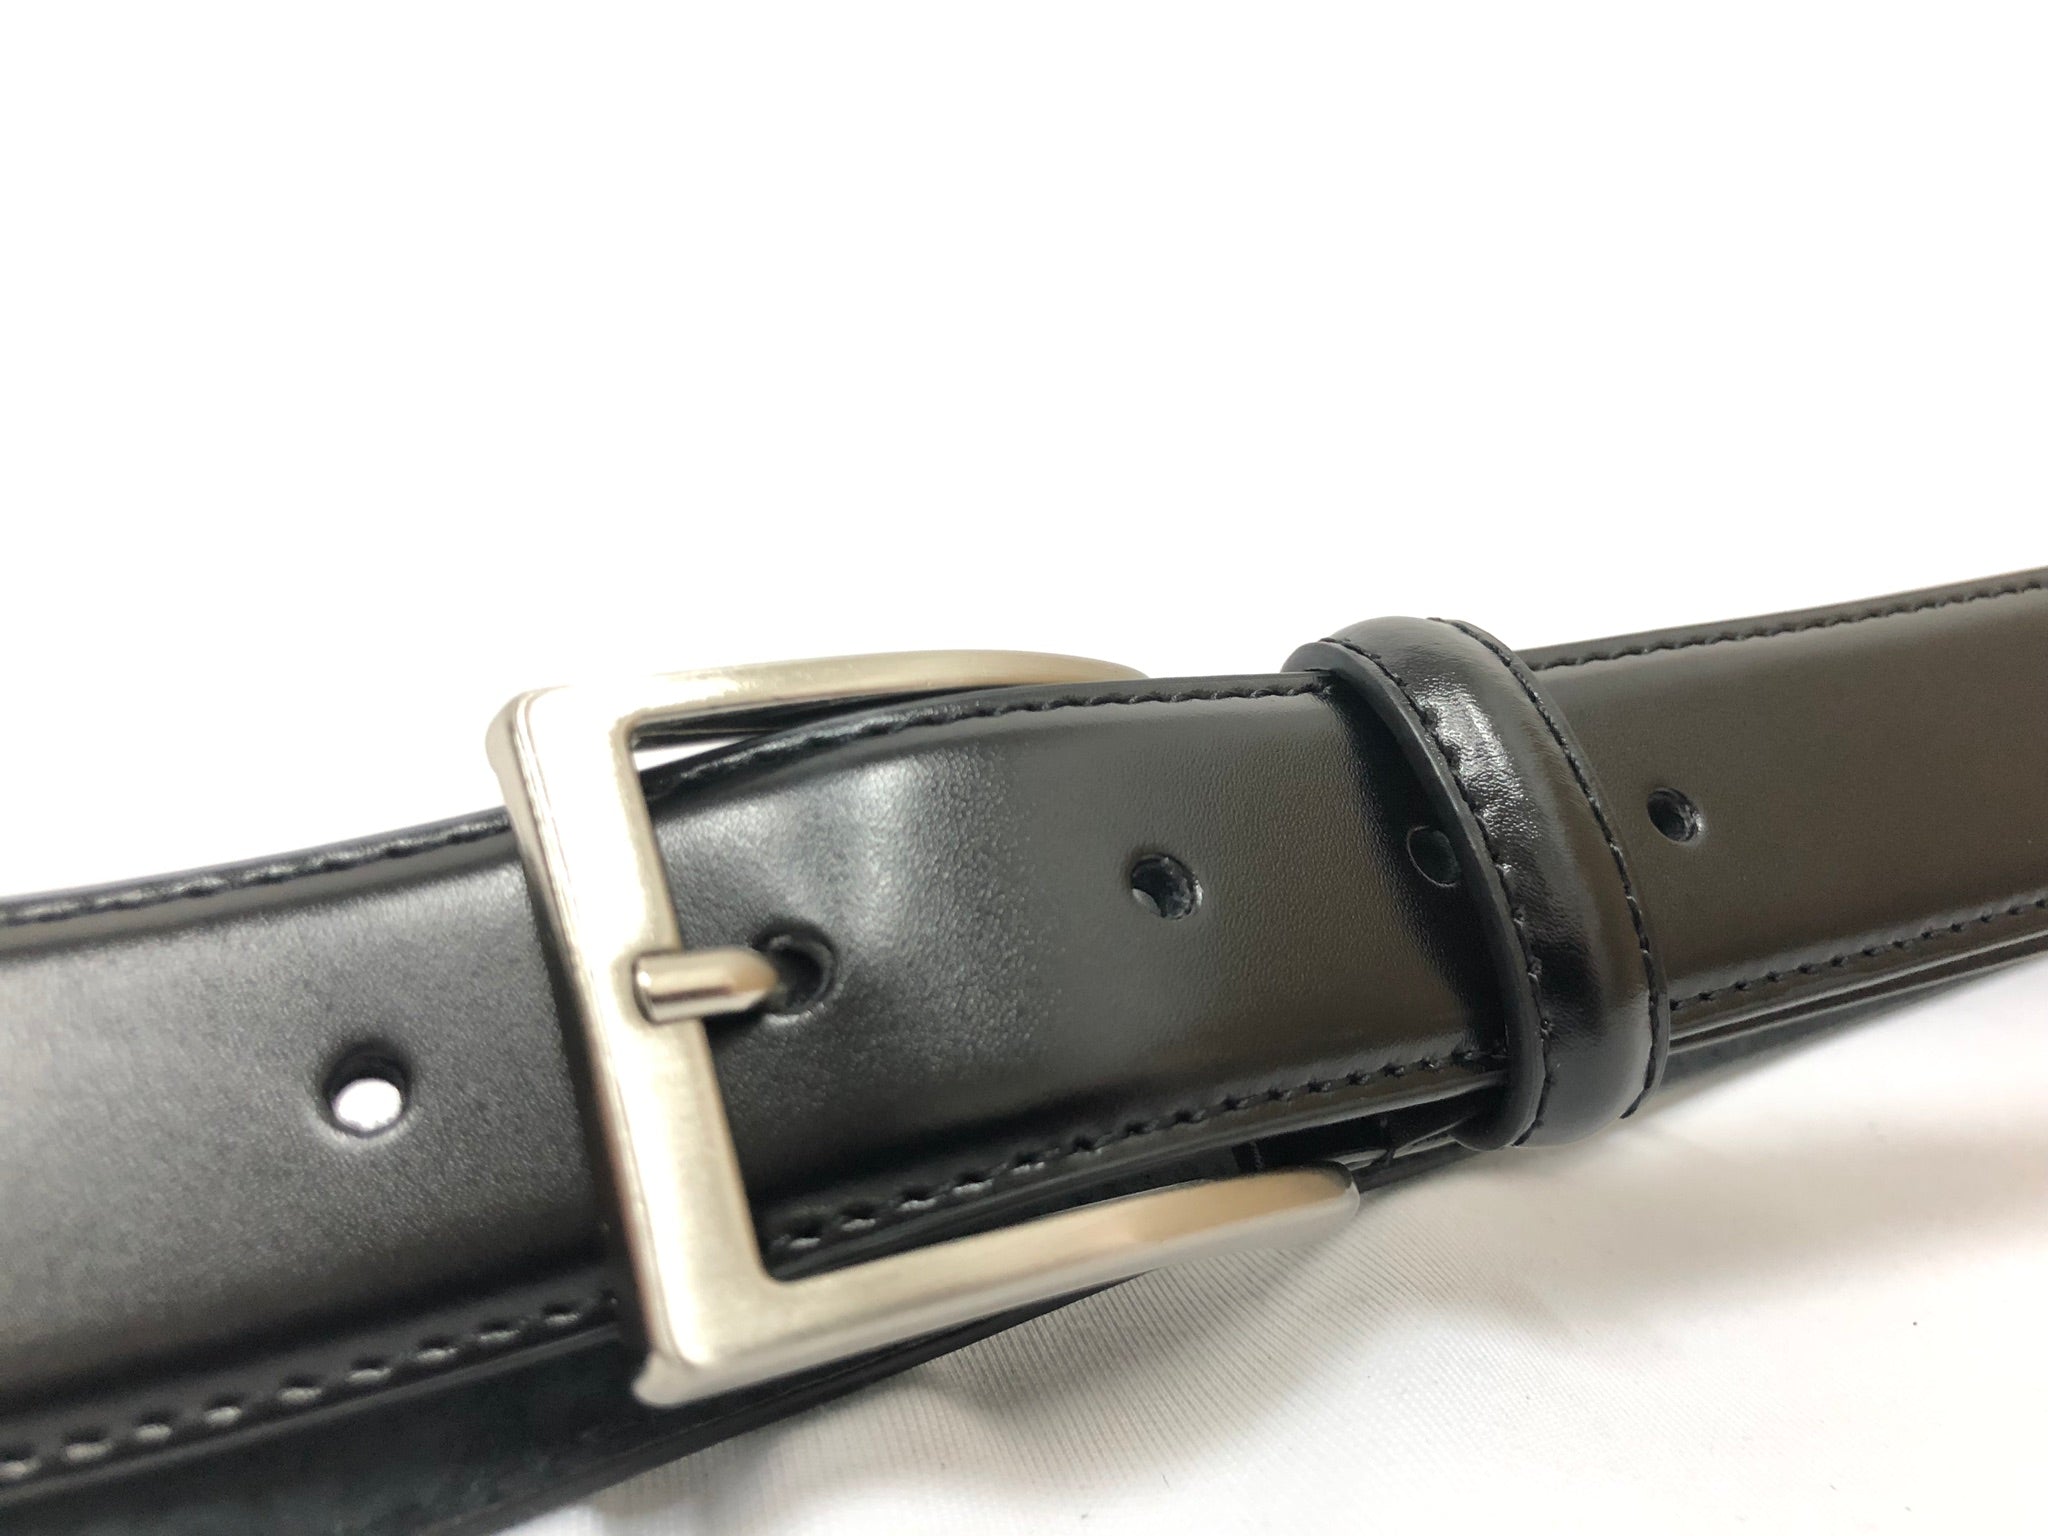 Cintura 035mm classica elegante da abito bombata con cuciture cucita